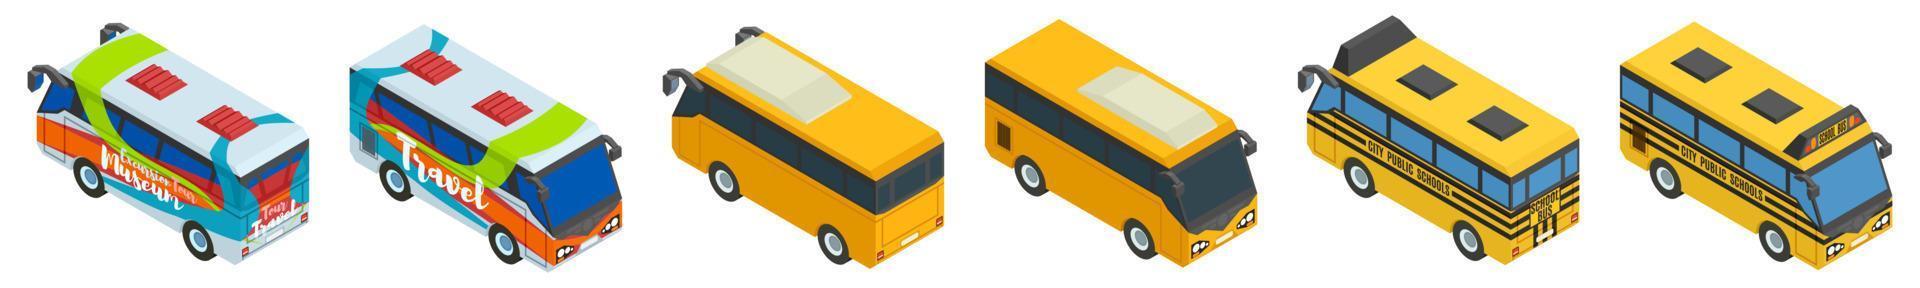 grote selectie van schooltoeristen- en stadsbussen vector